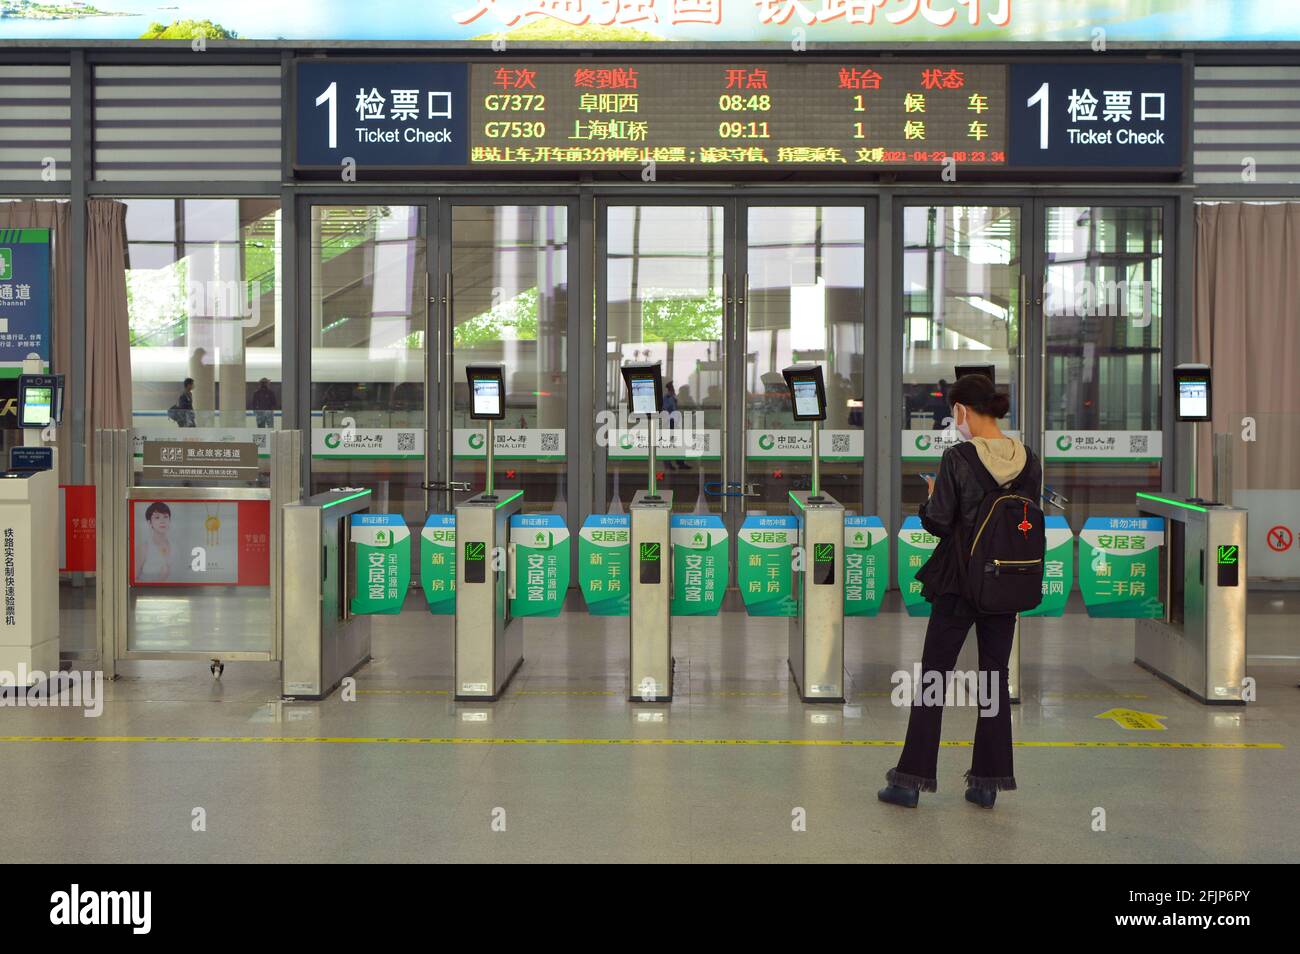 Una sola mujer espera a que su tren llegue a Jiaxing, China, cuando lo hace puede escanear su tarjeta de identificación para ir a través del torniquete a la plataforma. Foto de stock